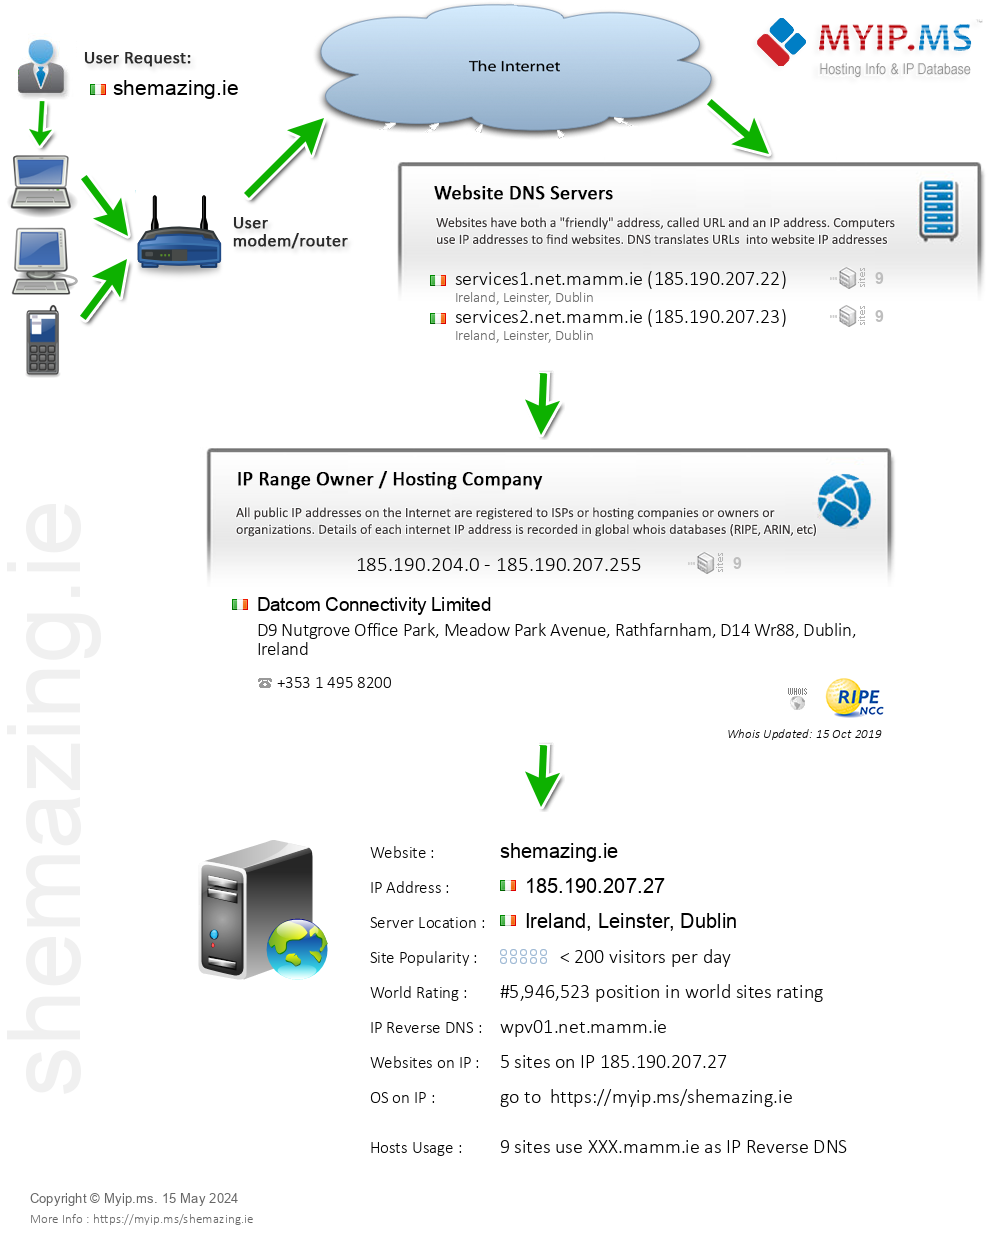 Shemazing.ie - Website Hosting Visual IP Diagram